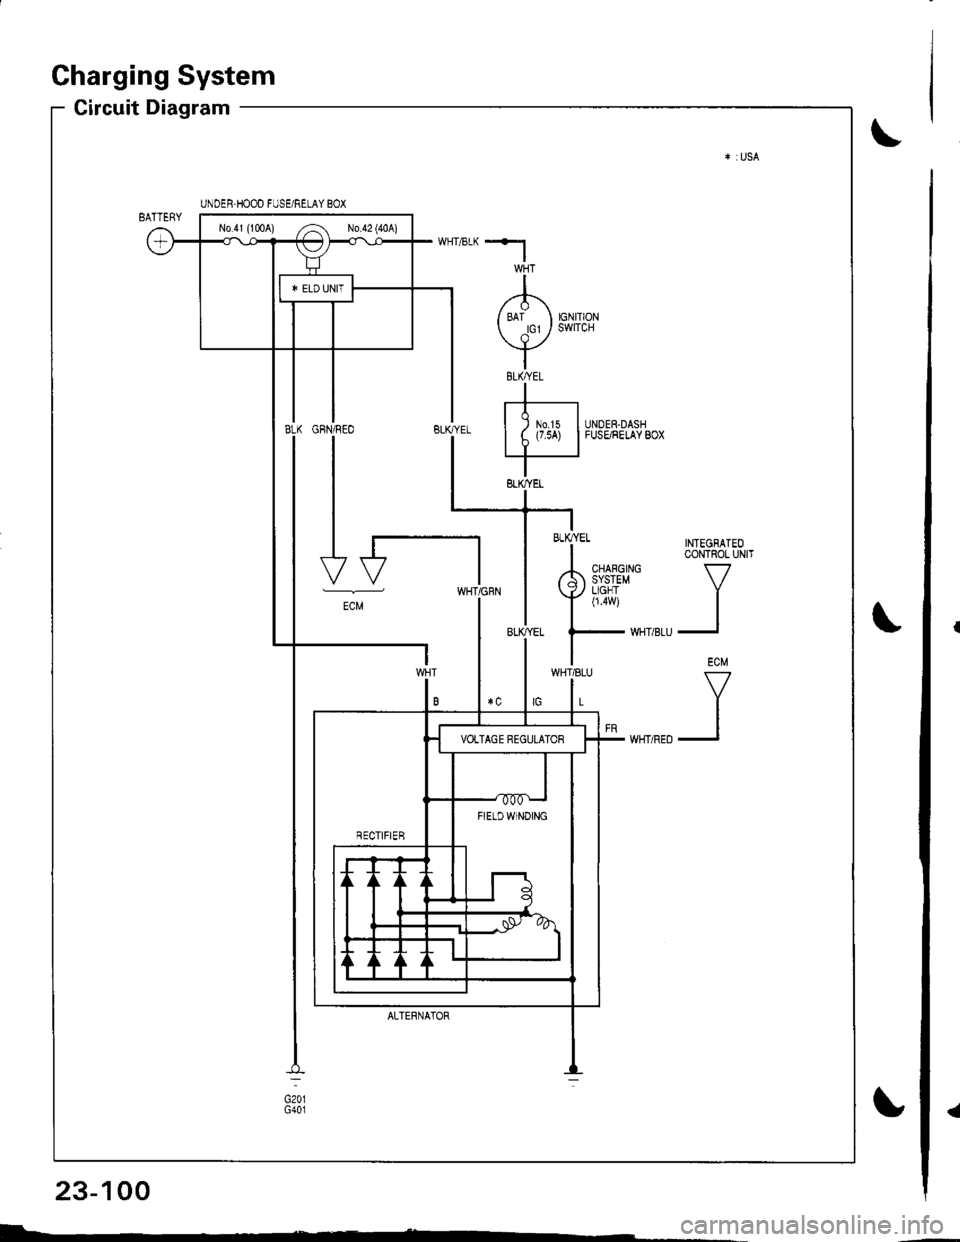 HONDA INTEGRA 1998 4.G Workshop Manual a
Charging System
Circuit Diagram
INTEGRATEOCONTROL UNIT
V
II
ECM
V
II
UNDER.HOOD FUSE/RELAY BOX
No41 (1tl0A) /^ N0.42 (40A)
FIETDWINOING
WHT/8LU
L
GFN/REO
I
I
I
I-t
-"
ALTERNATOR
BLK/YEL
23-100
I- 